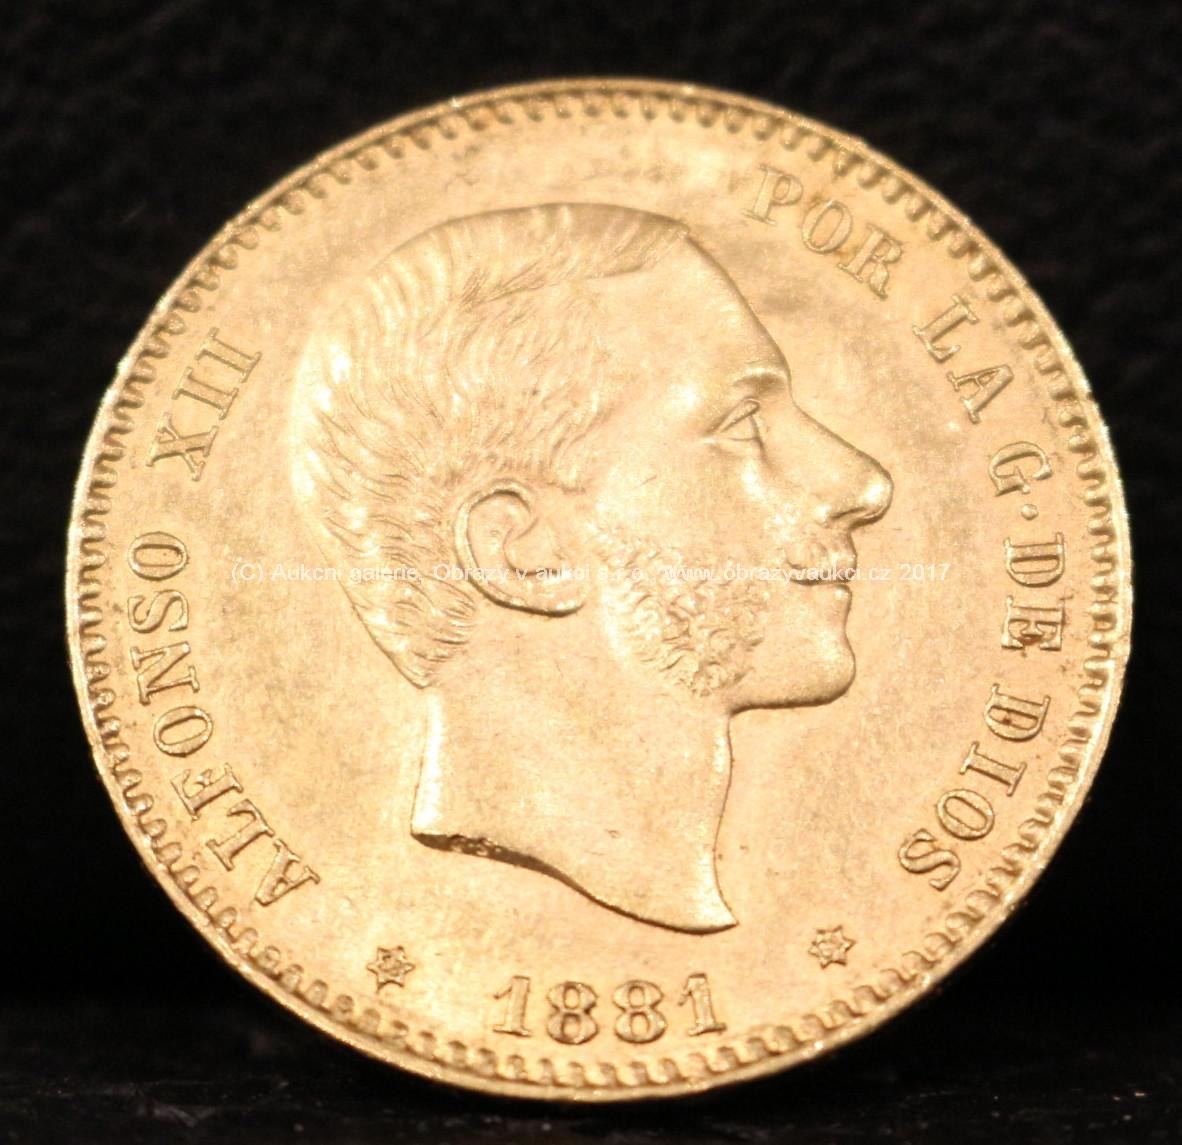 Zlatá mince - 25 pesetas - Alfonso XII., 1881, Španělsko, ryzost: 900/1000, hmotnost: 8,05 g